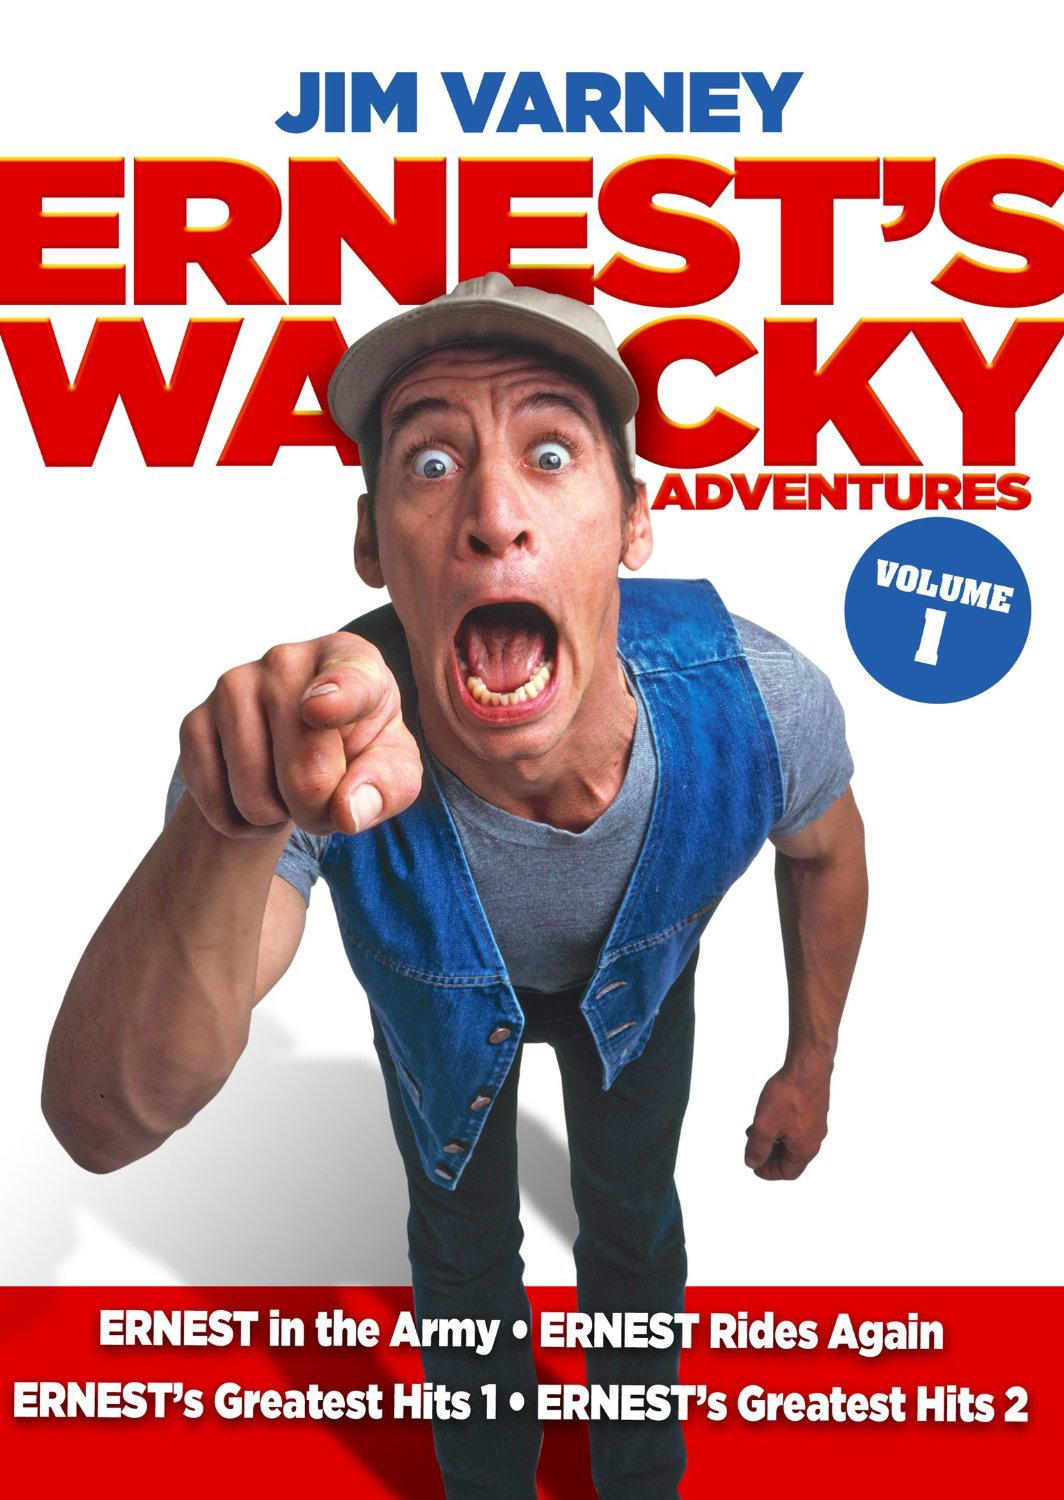 Ernests Wacky Adventures